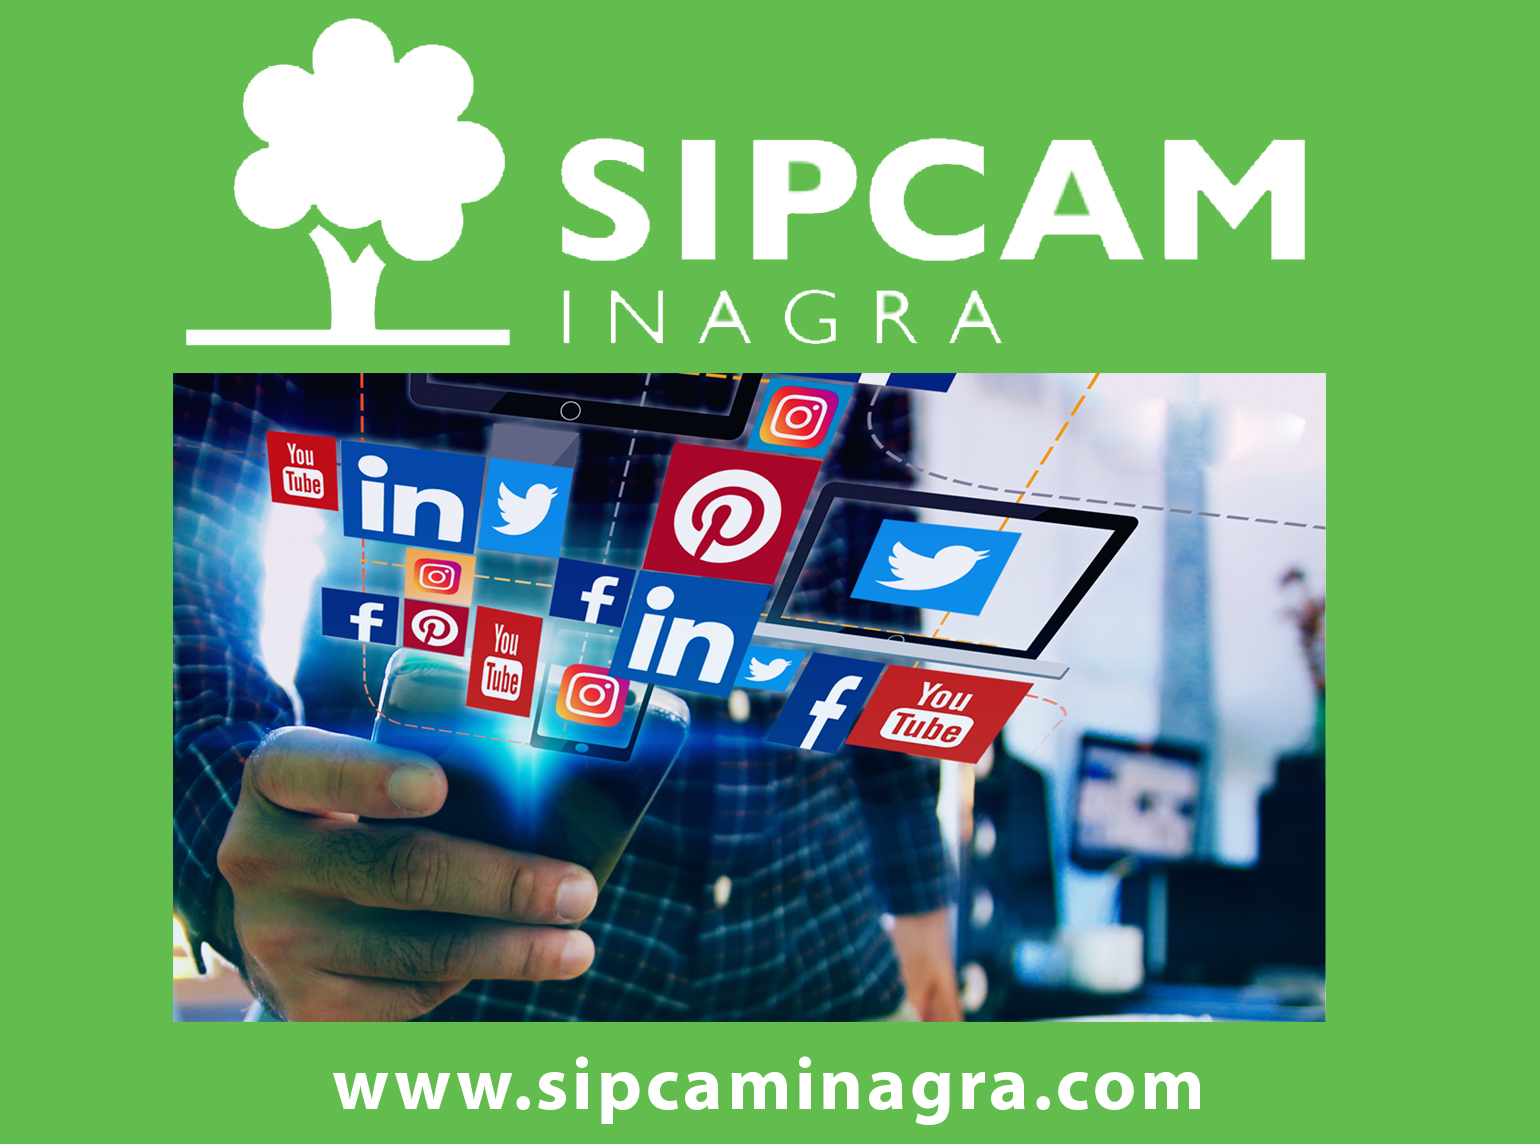 SIPCAM Inagra augmente sa présence digitale sur les réseaux sociaux.